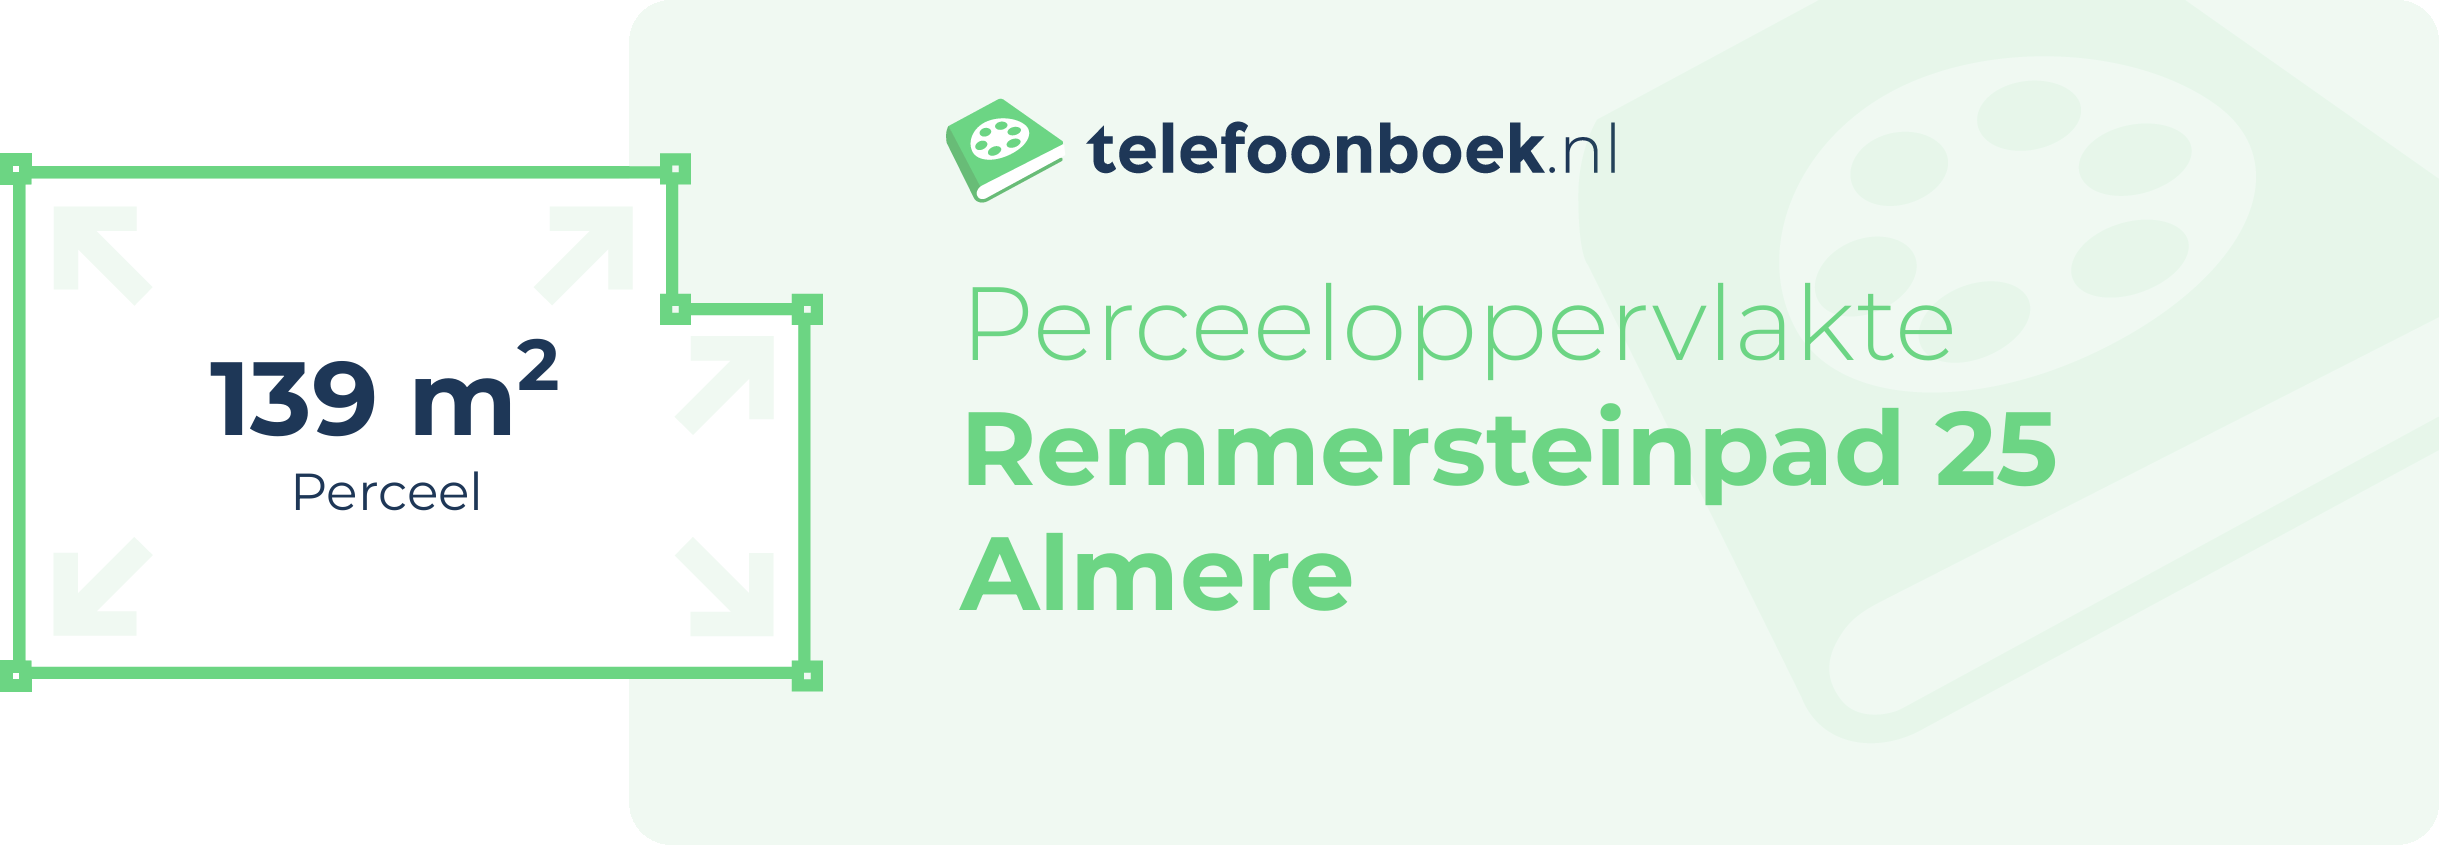 Perceeloppervlakte Remmersteinpad 25 Almere